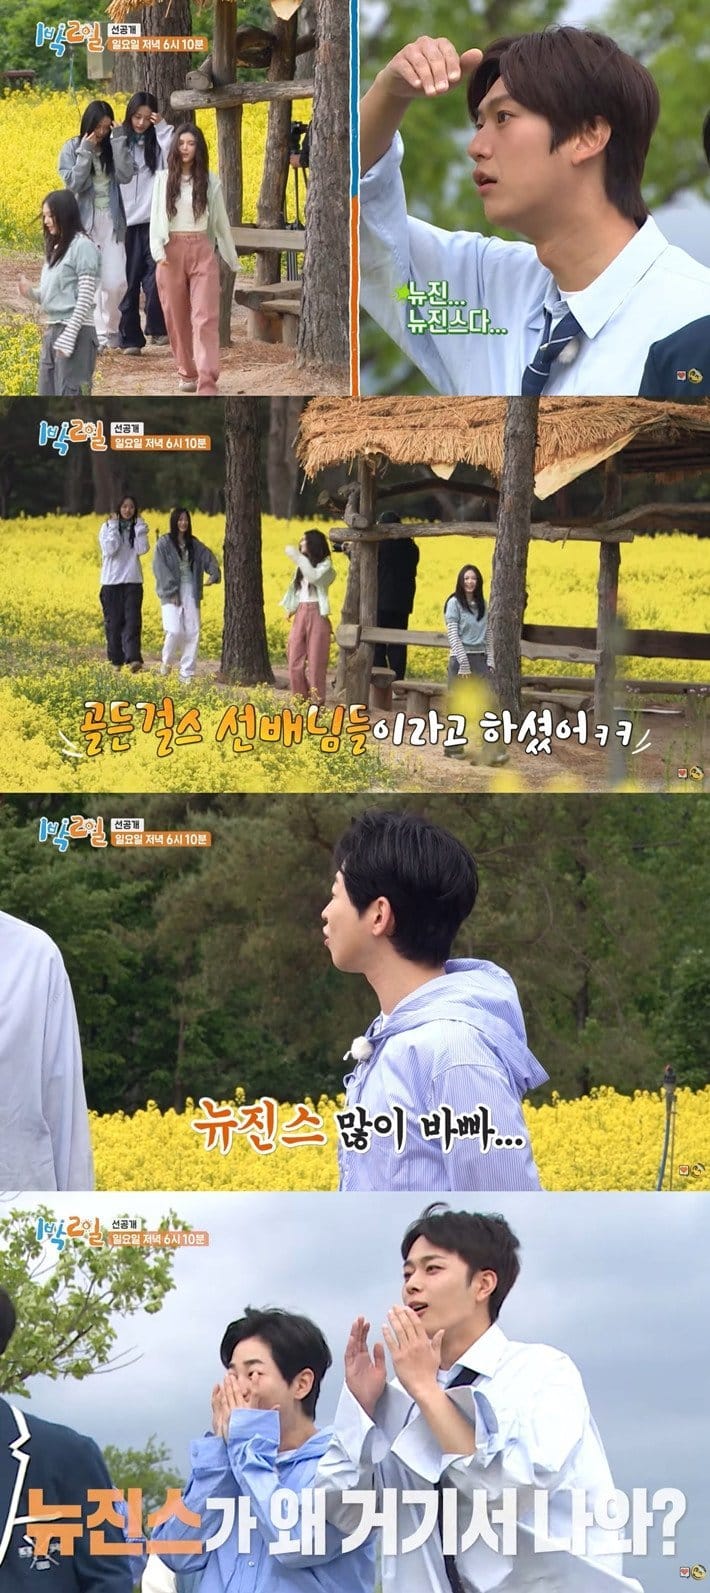 NewJeans дебютировали на KBS2 в популярном развлекательном шоу "2 Days & 1 Night".